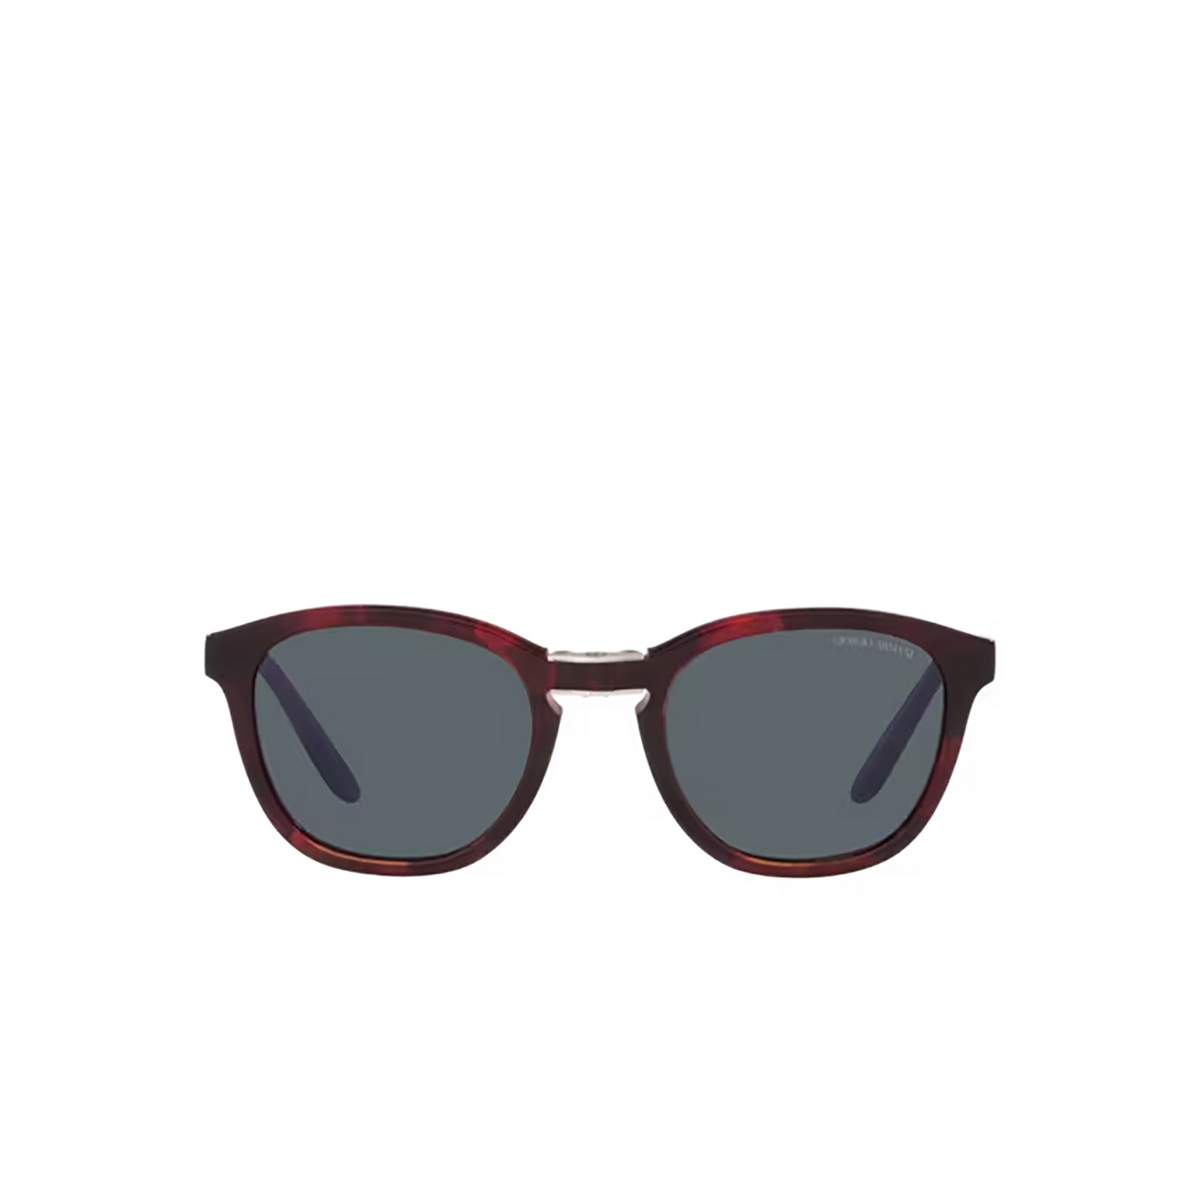 Giorgio Armani AR8170 Sunglasses 5862R5 Red Havana - front view